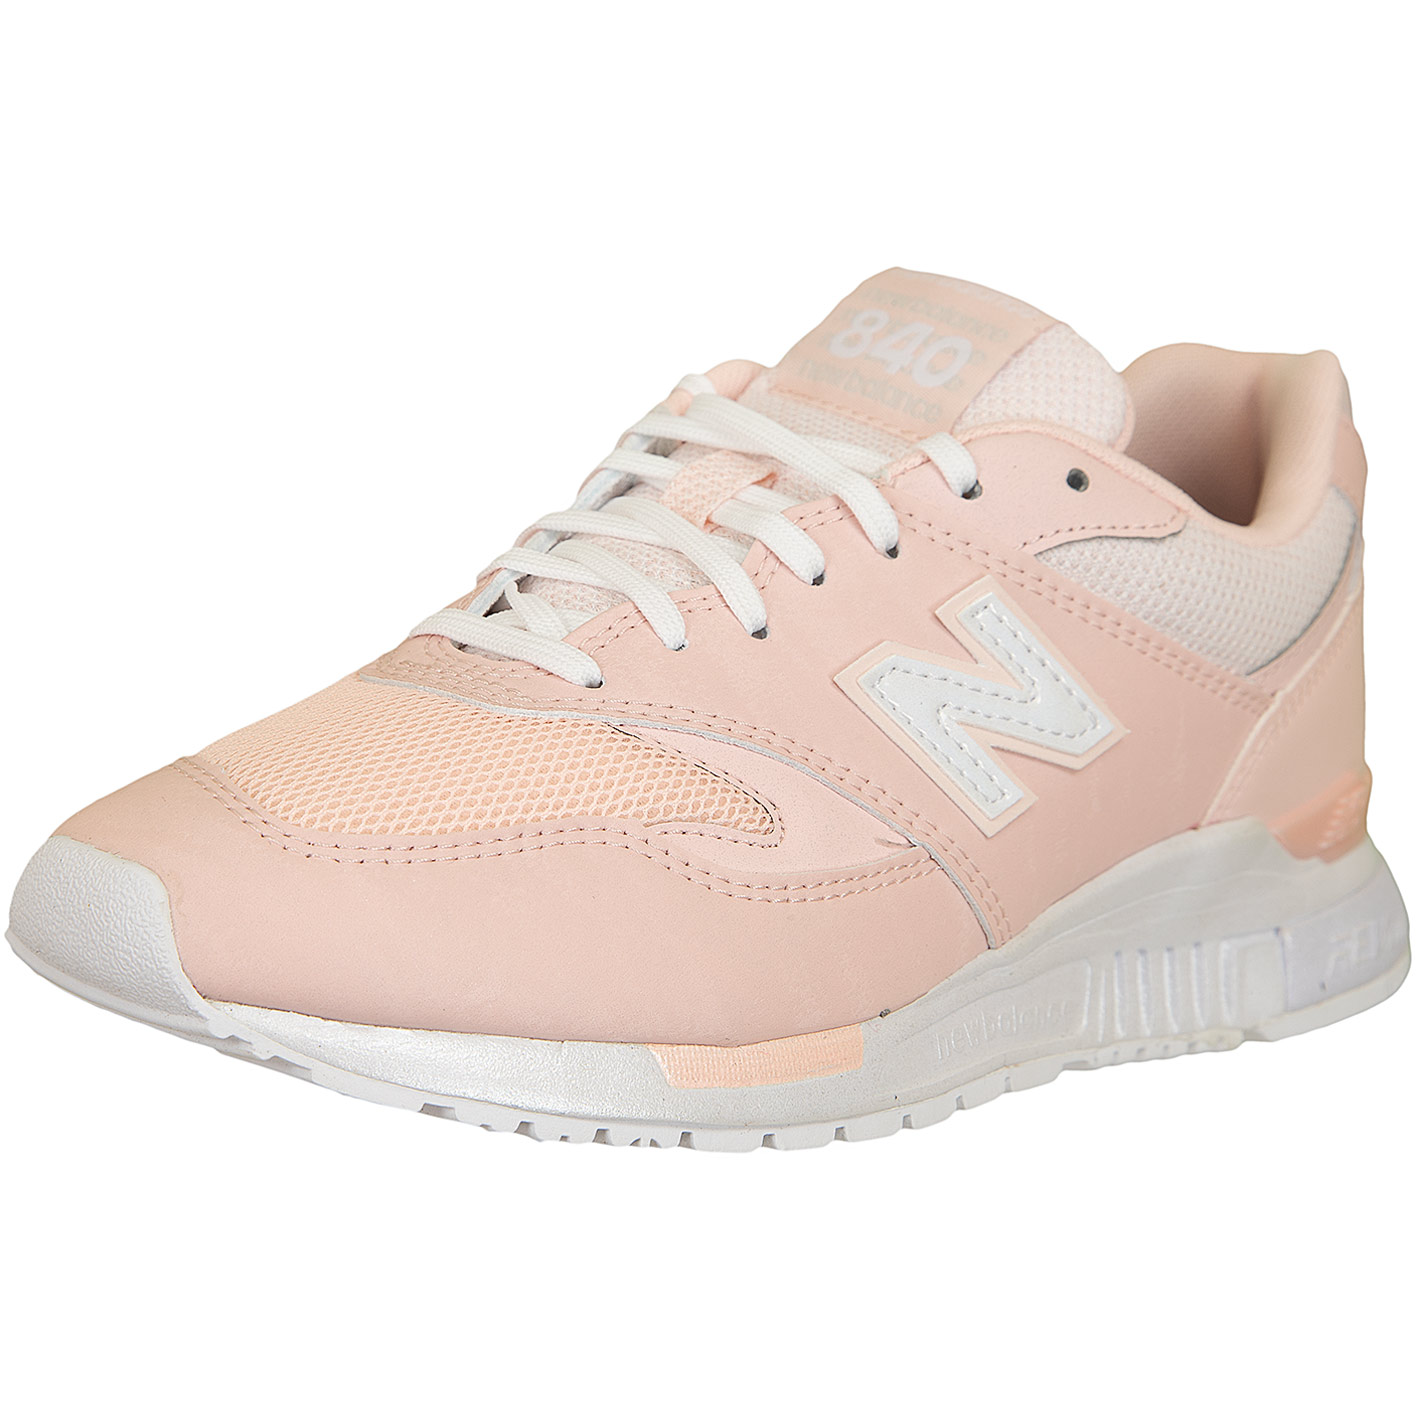 ☆ New Balance Damen Sneaker 840 Synthetik/Textil rosa - hier bestellen!